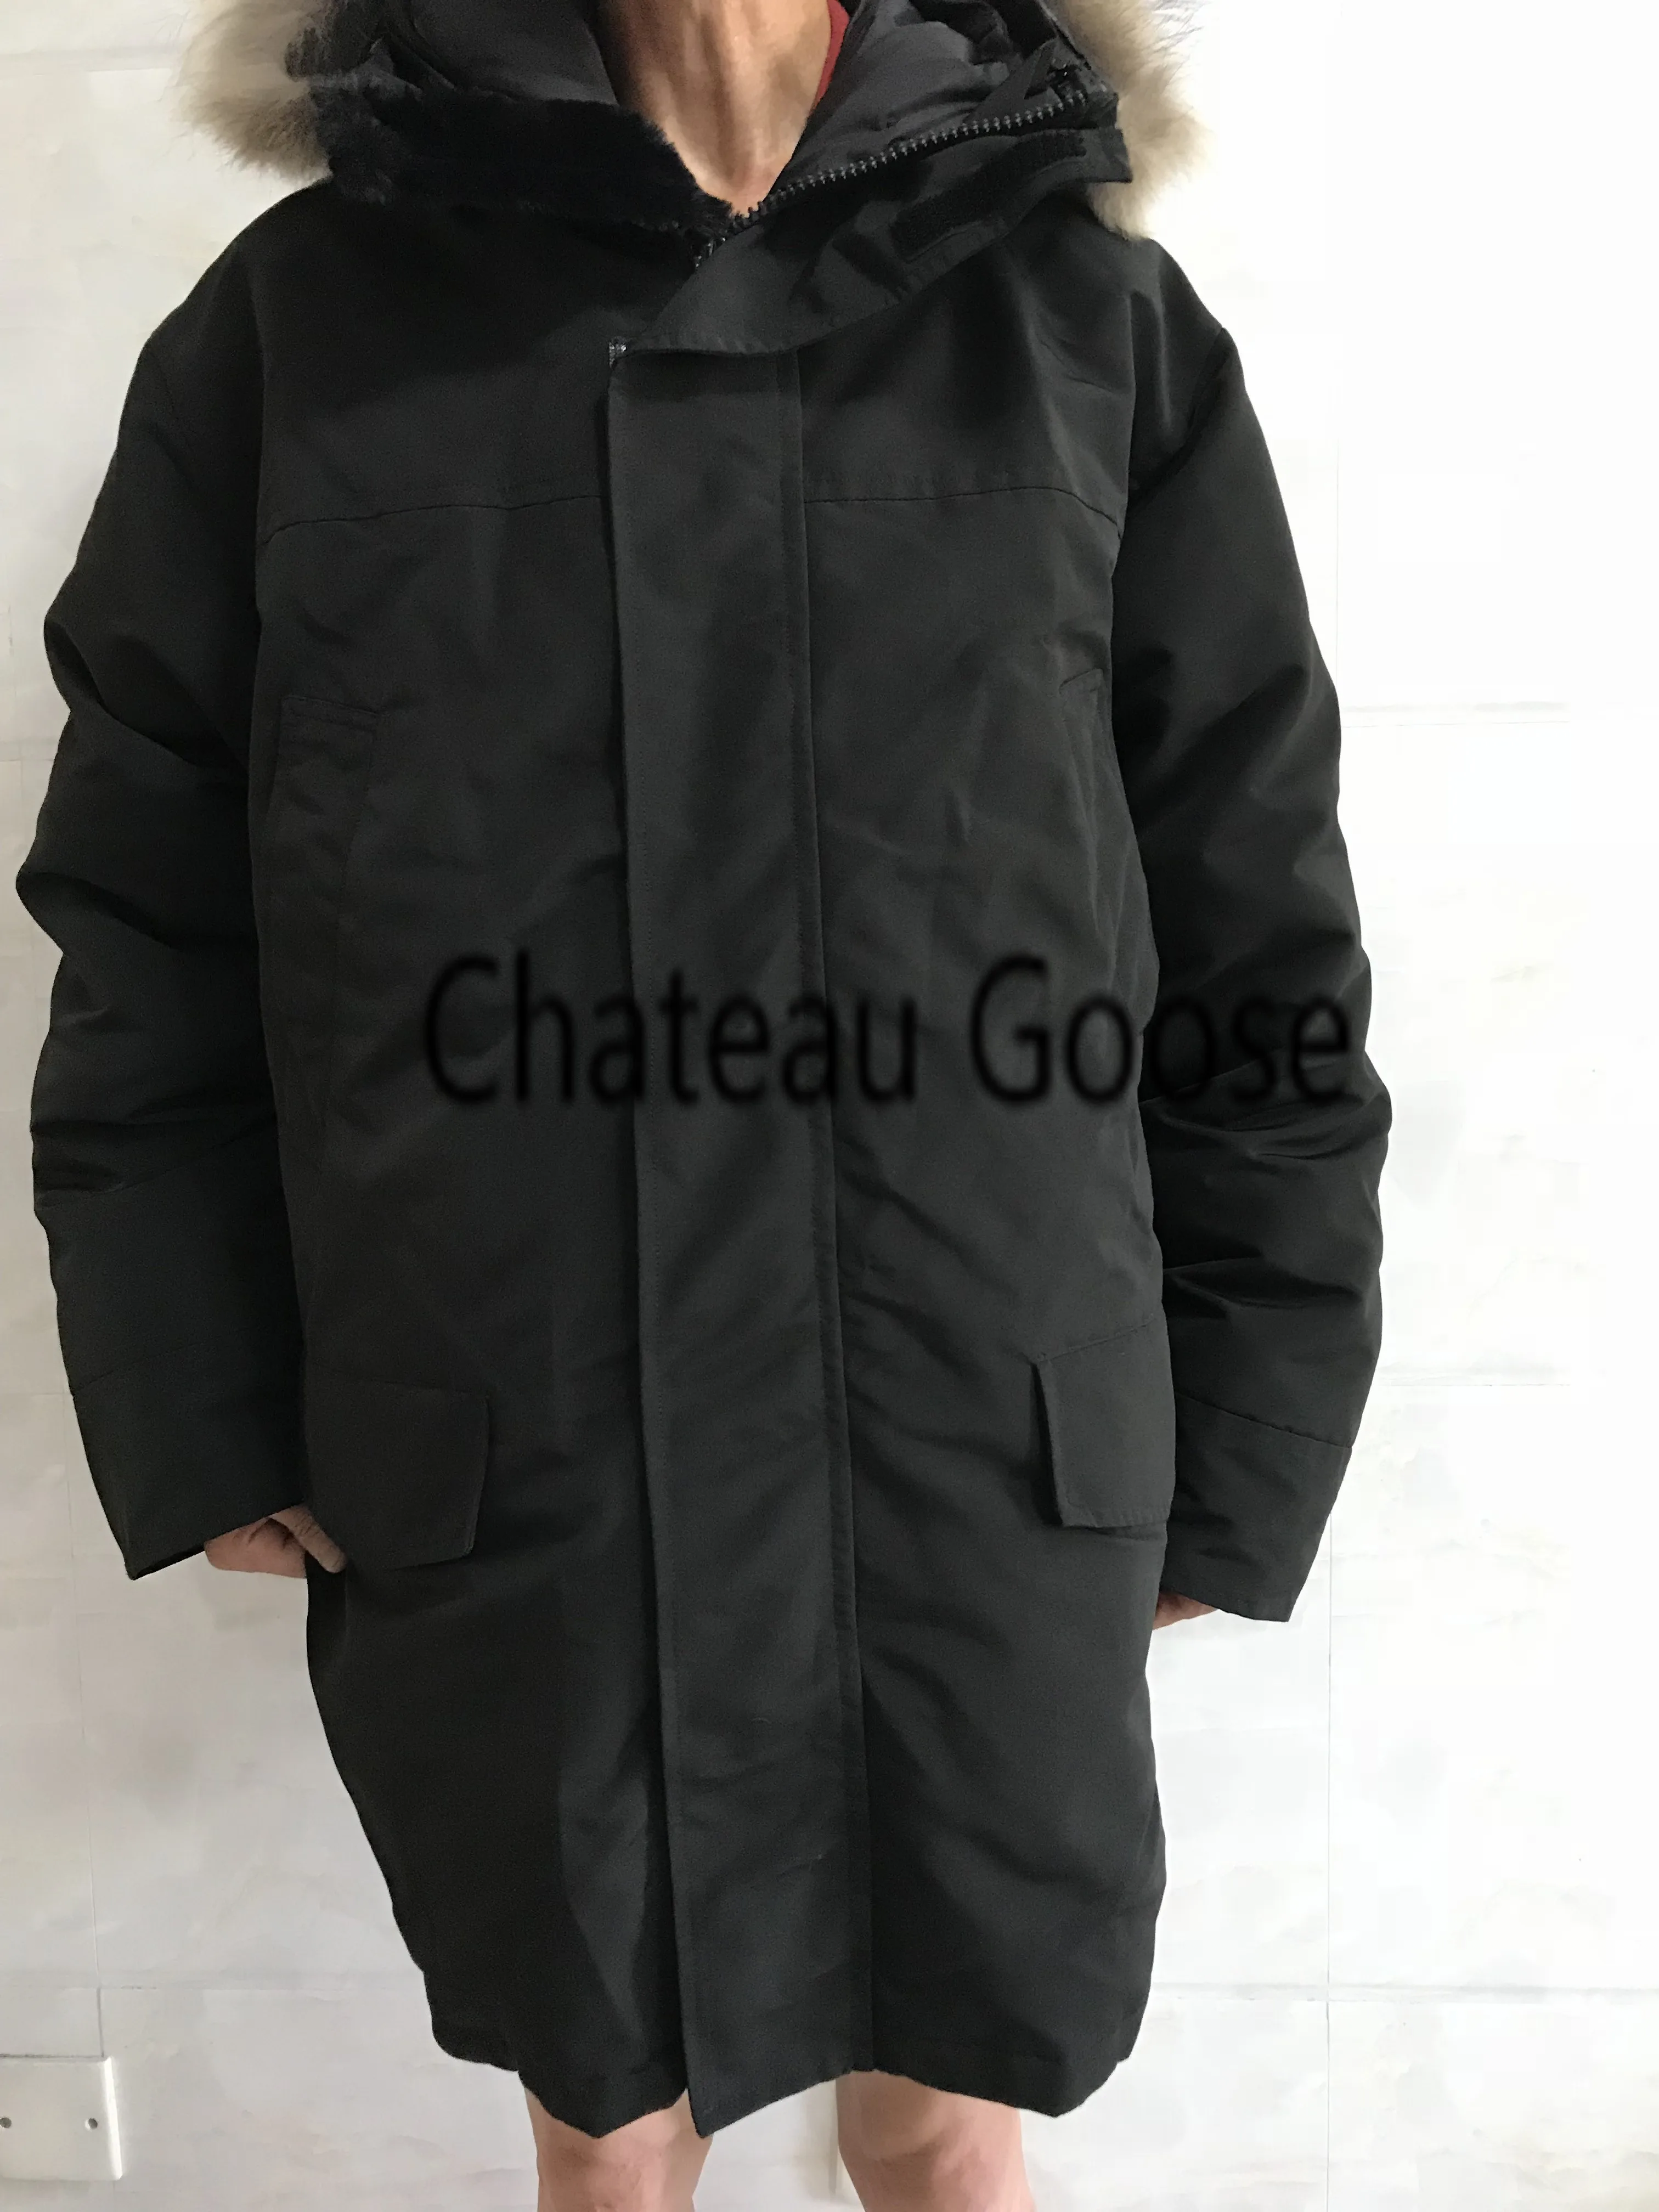 Chateau куртка на гусином пуху Мужская зимняя Fourrure мужская куртка-парка Jassen большой меховой с капюшоном Fourrure Manteau пуховик пальто Hiver Doudoune